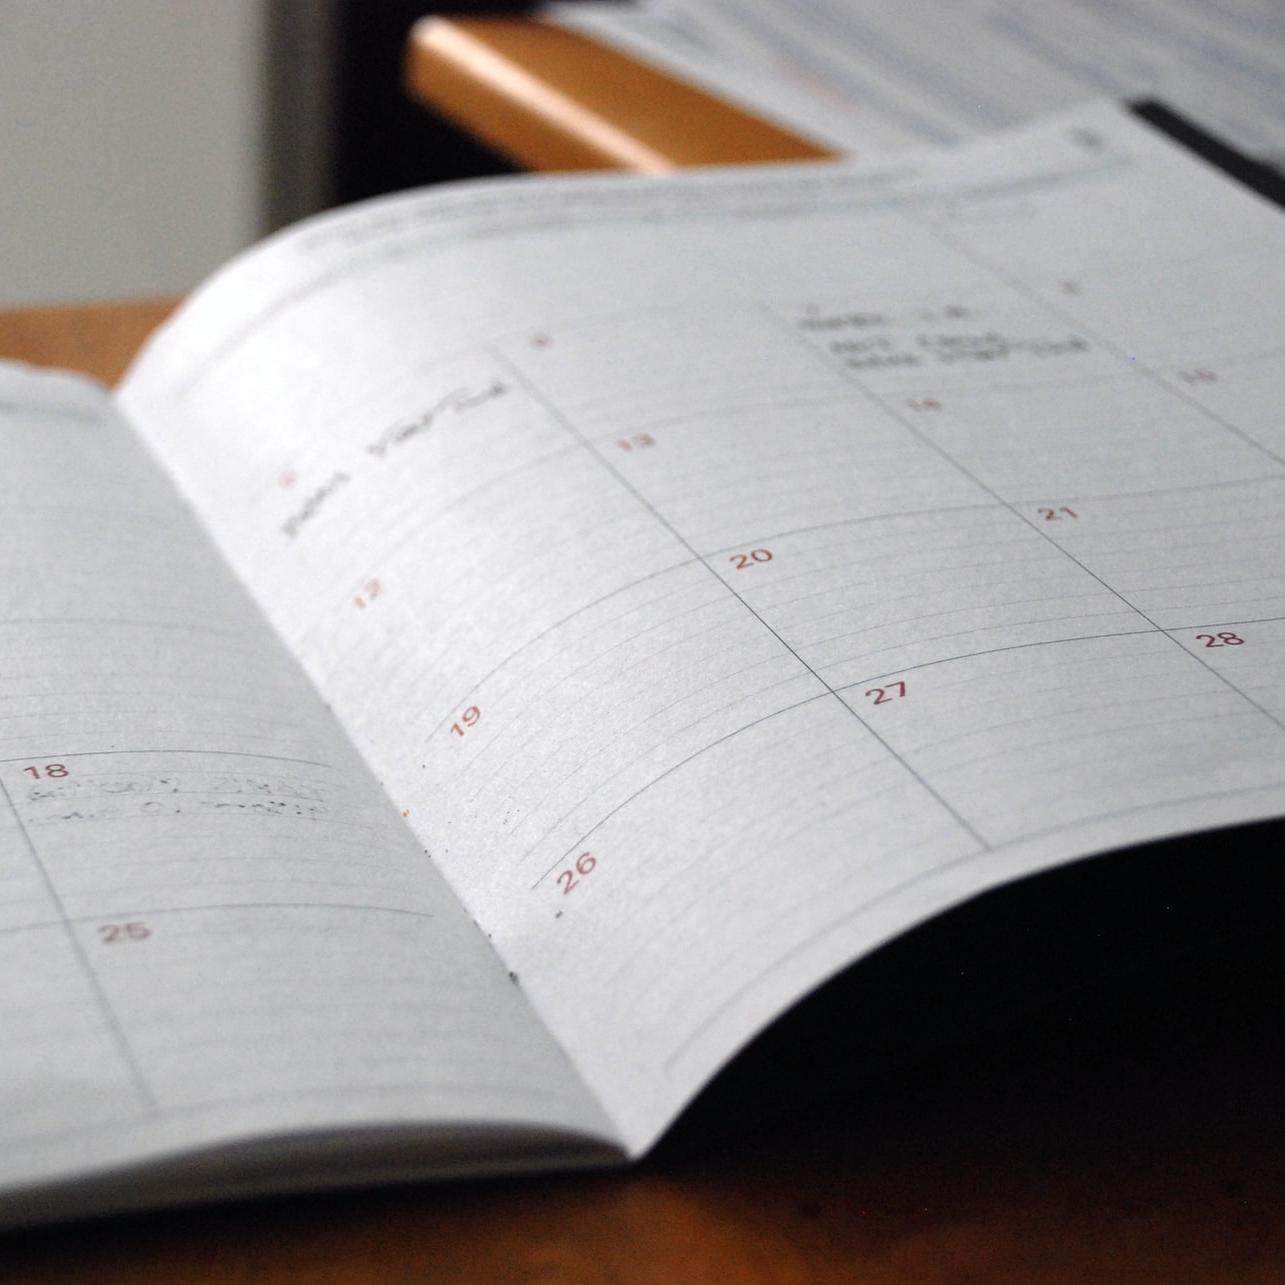 Calendar pages